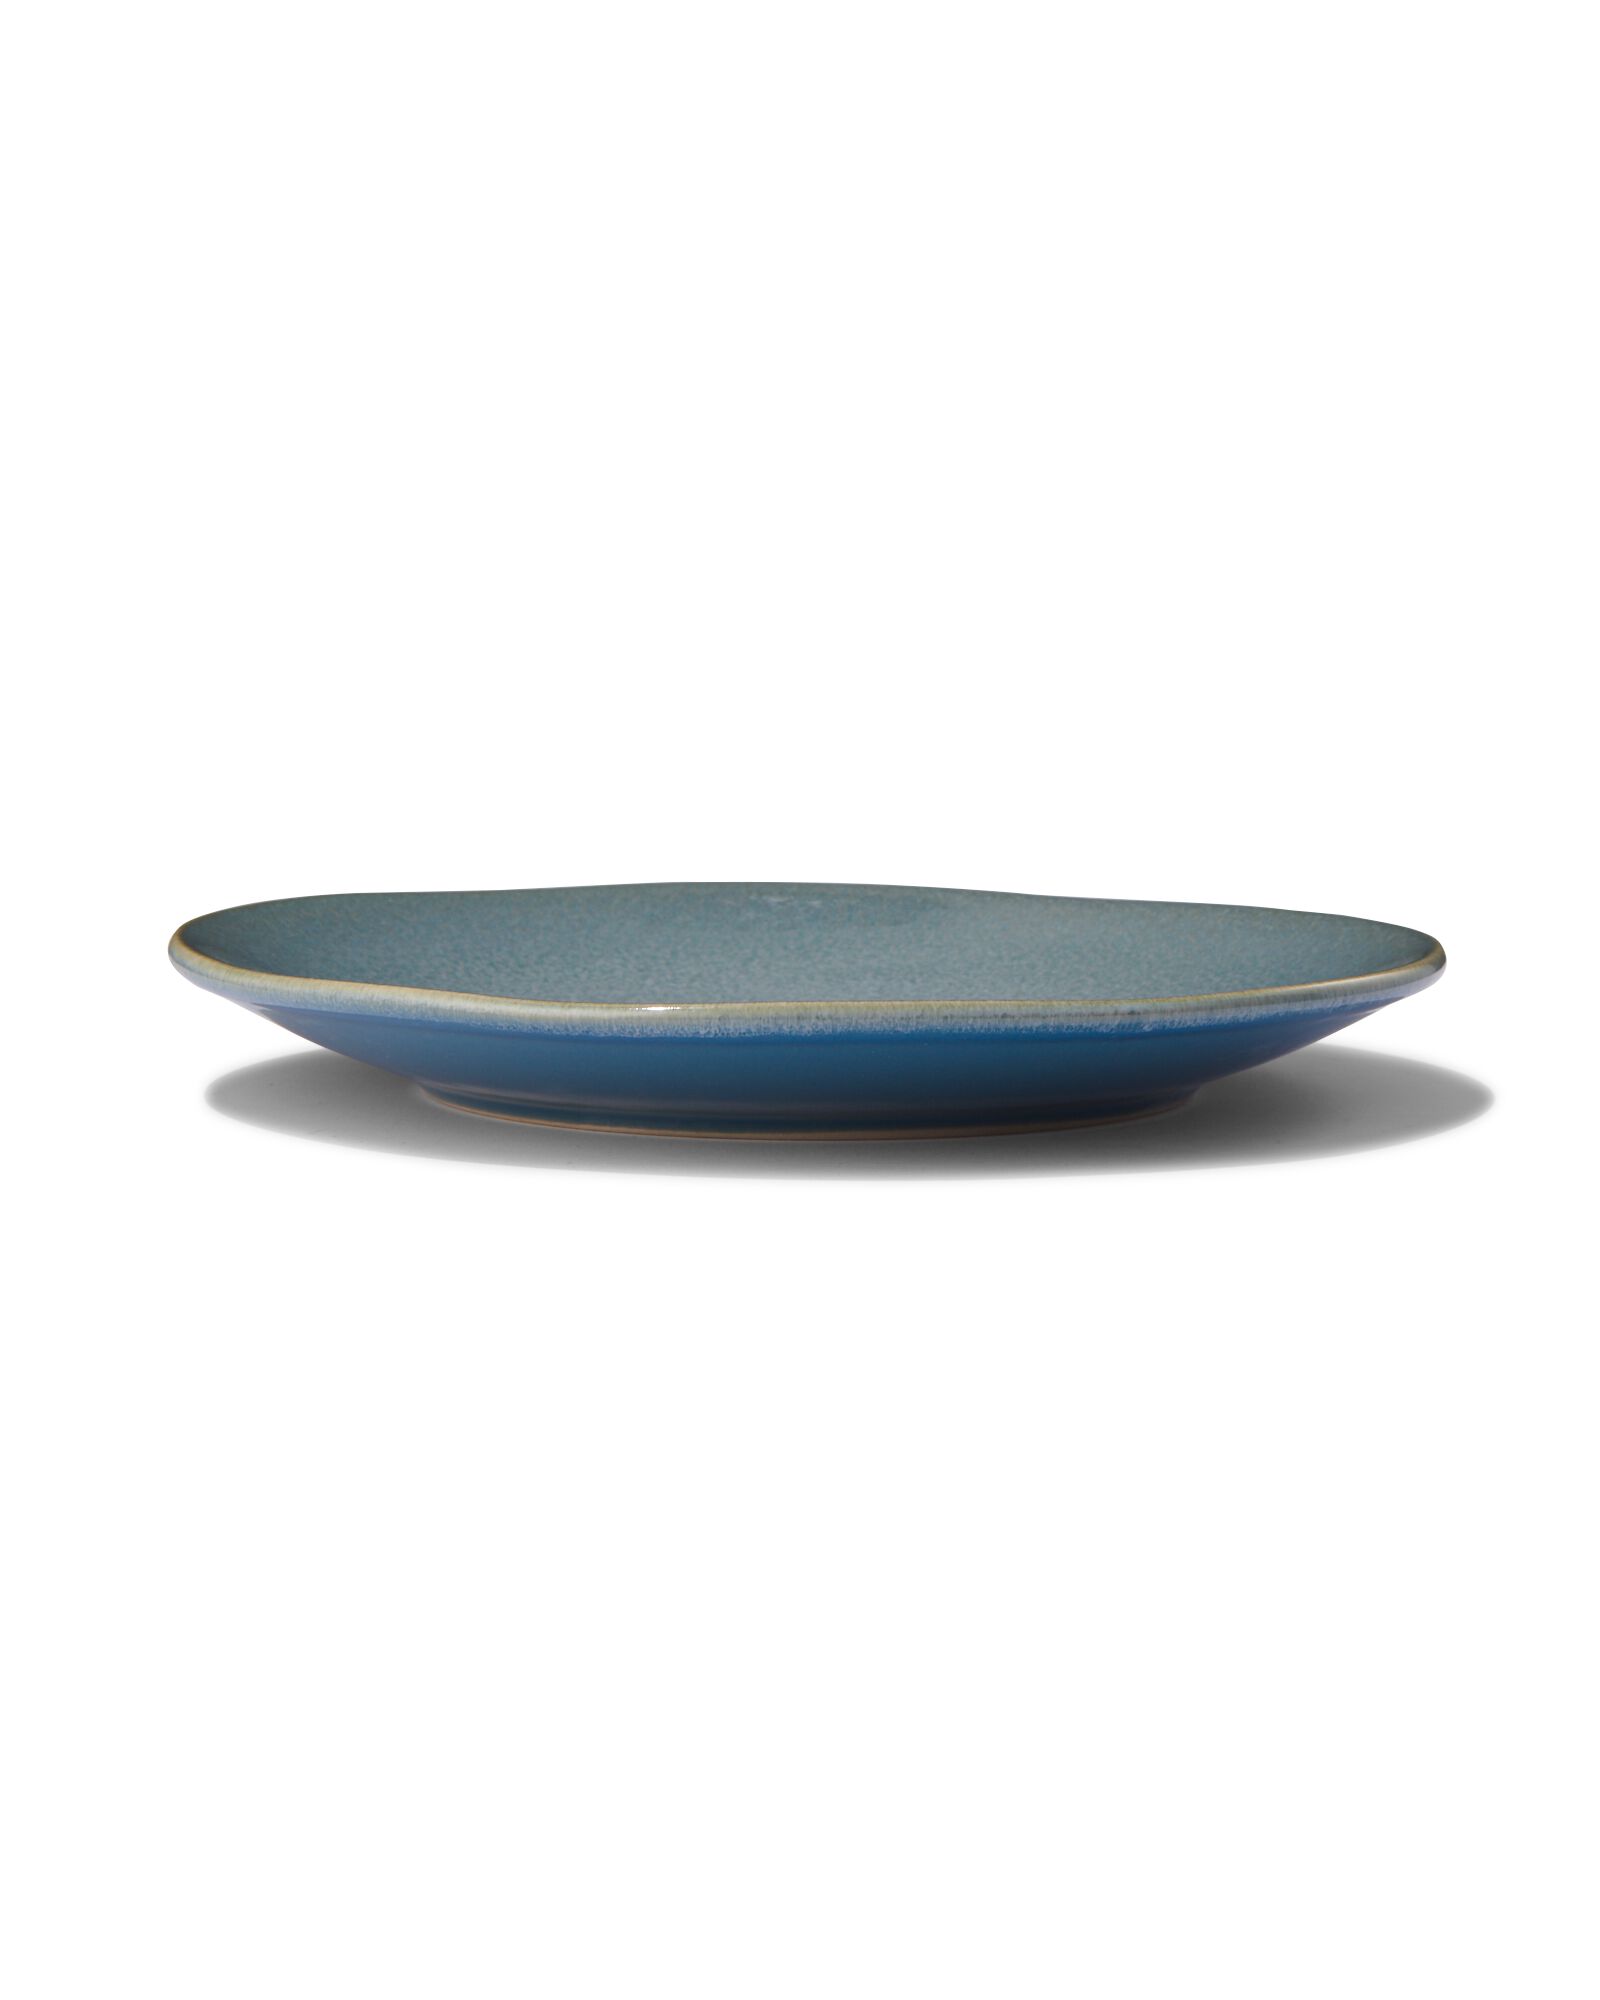 petite assiette - 23 cm - Porto - émail réactif - bleu - 9602022 - HEMA